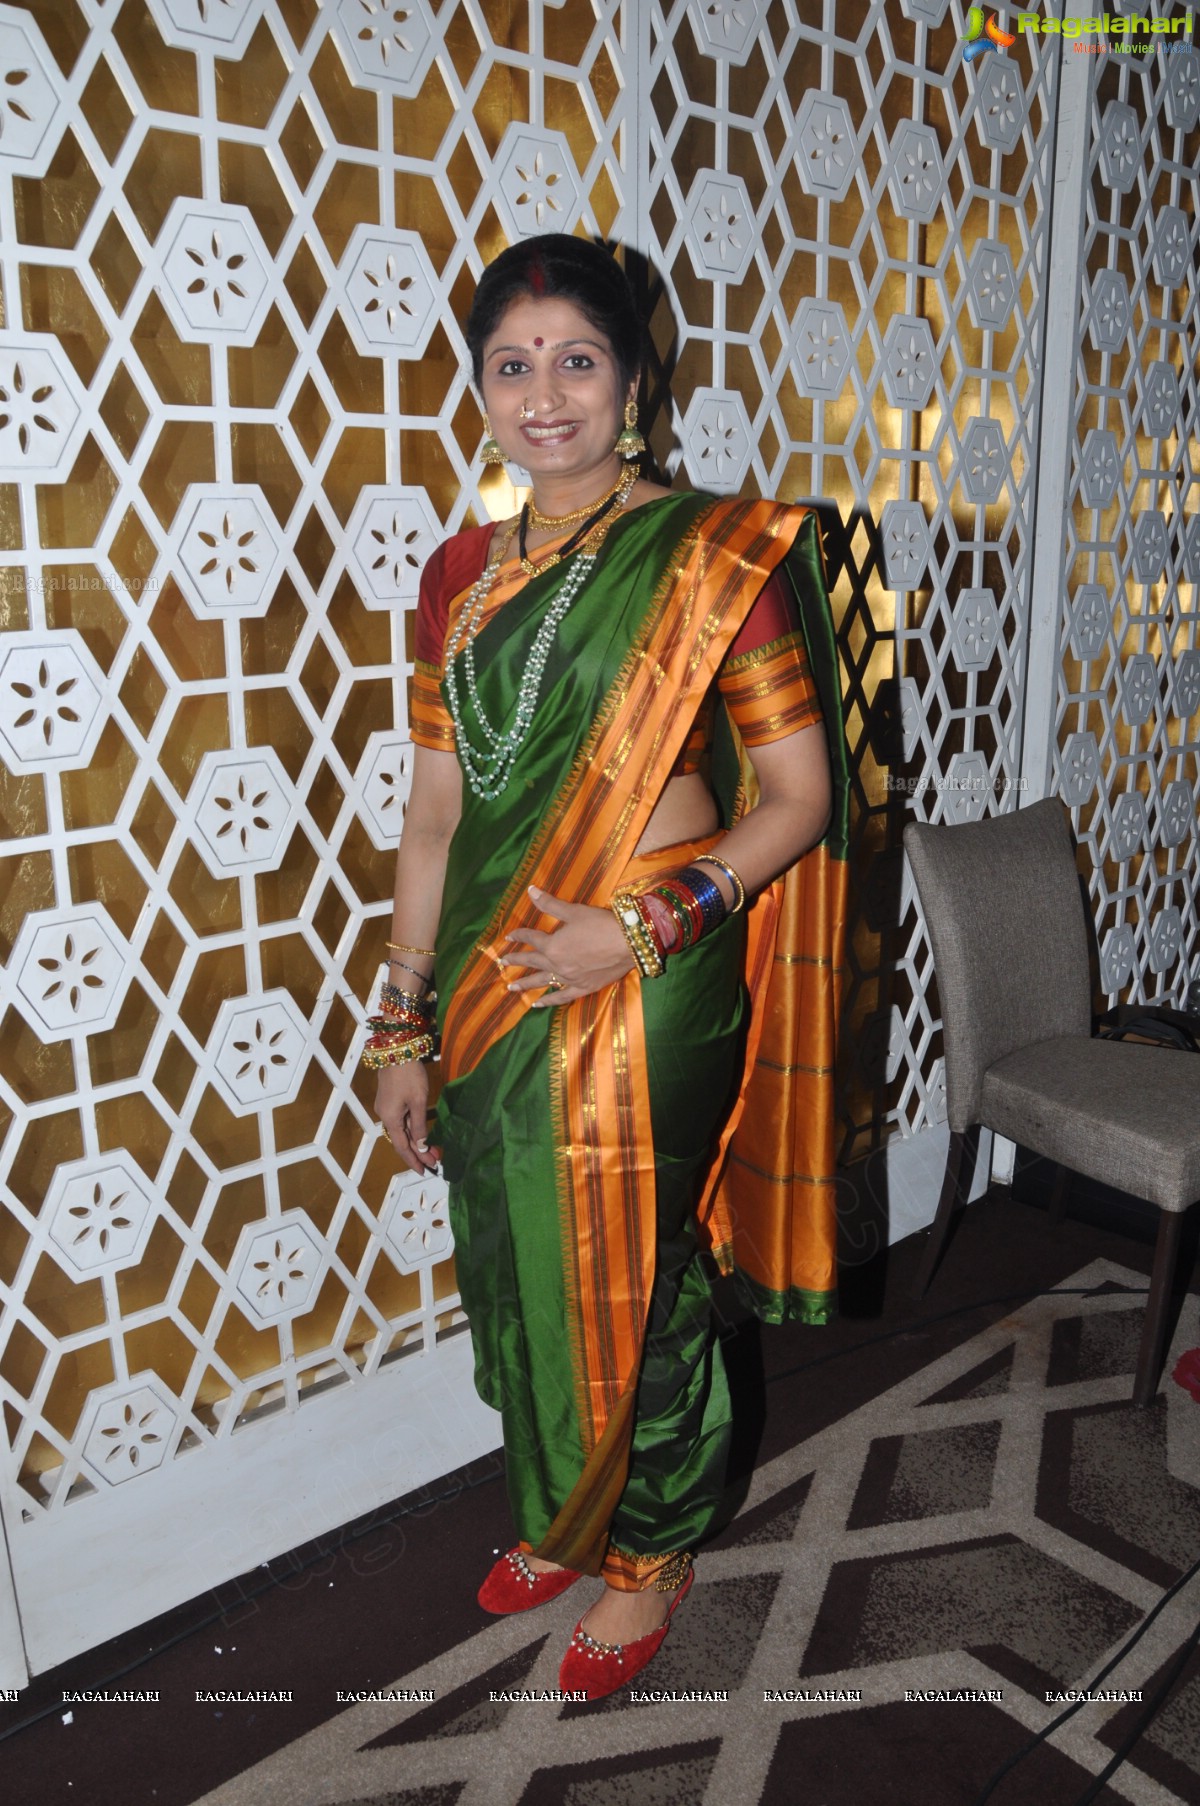 Utkarsh and Utkarshi - An Evening in Mumbai at Westin Ballroom I and II